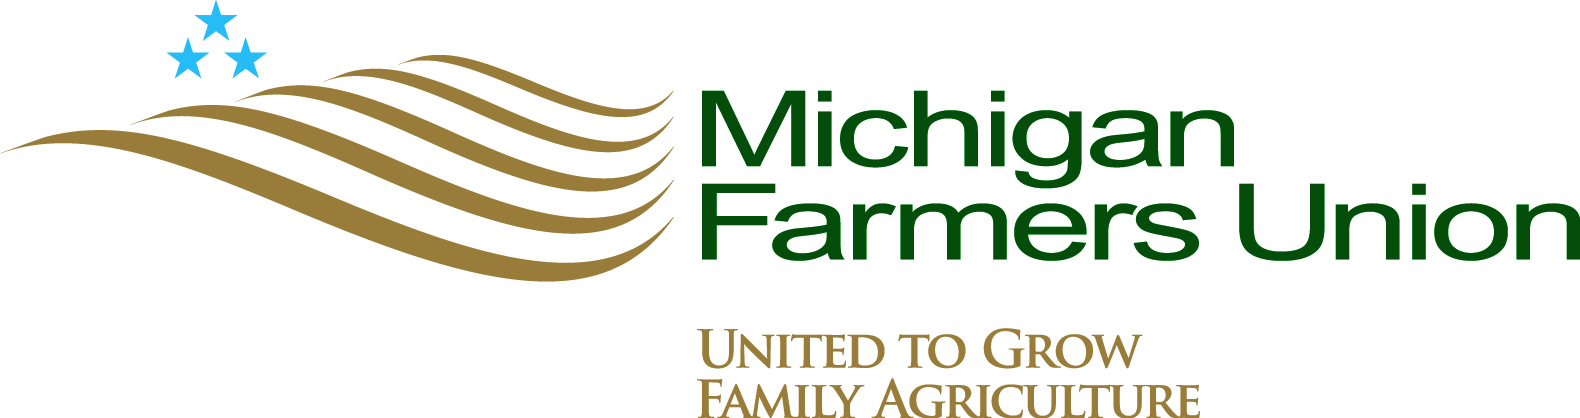 Michigan Farmers Union - 3 YR Membership